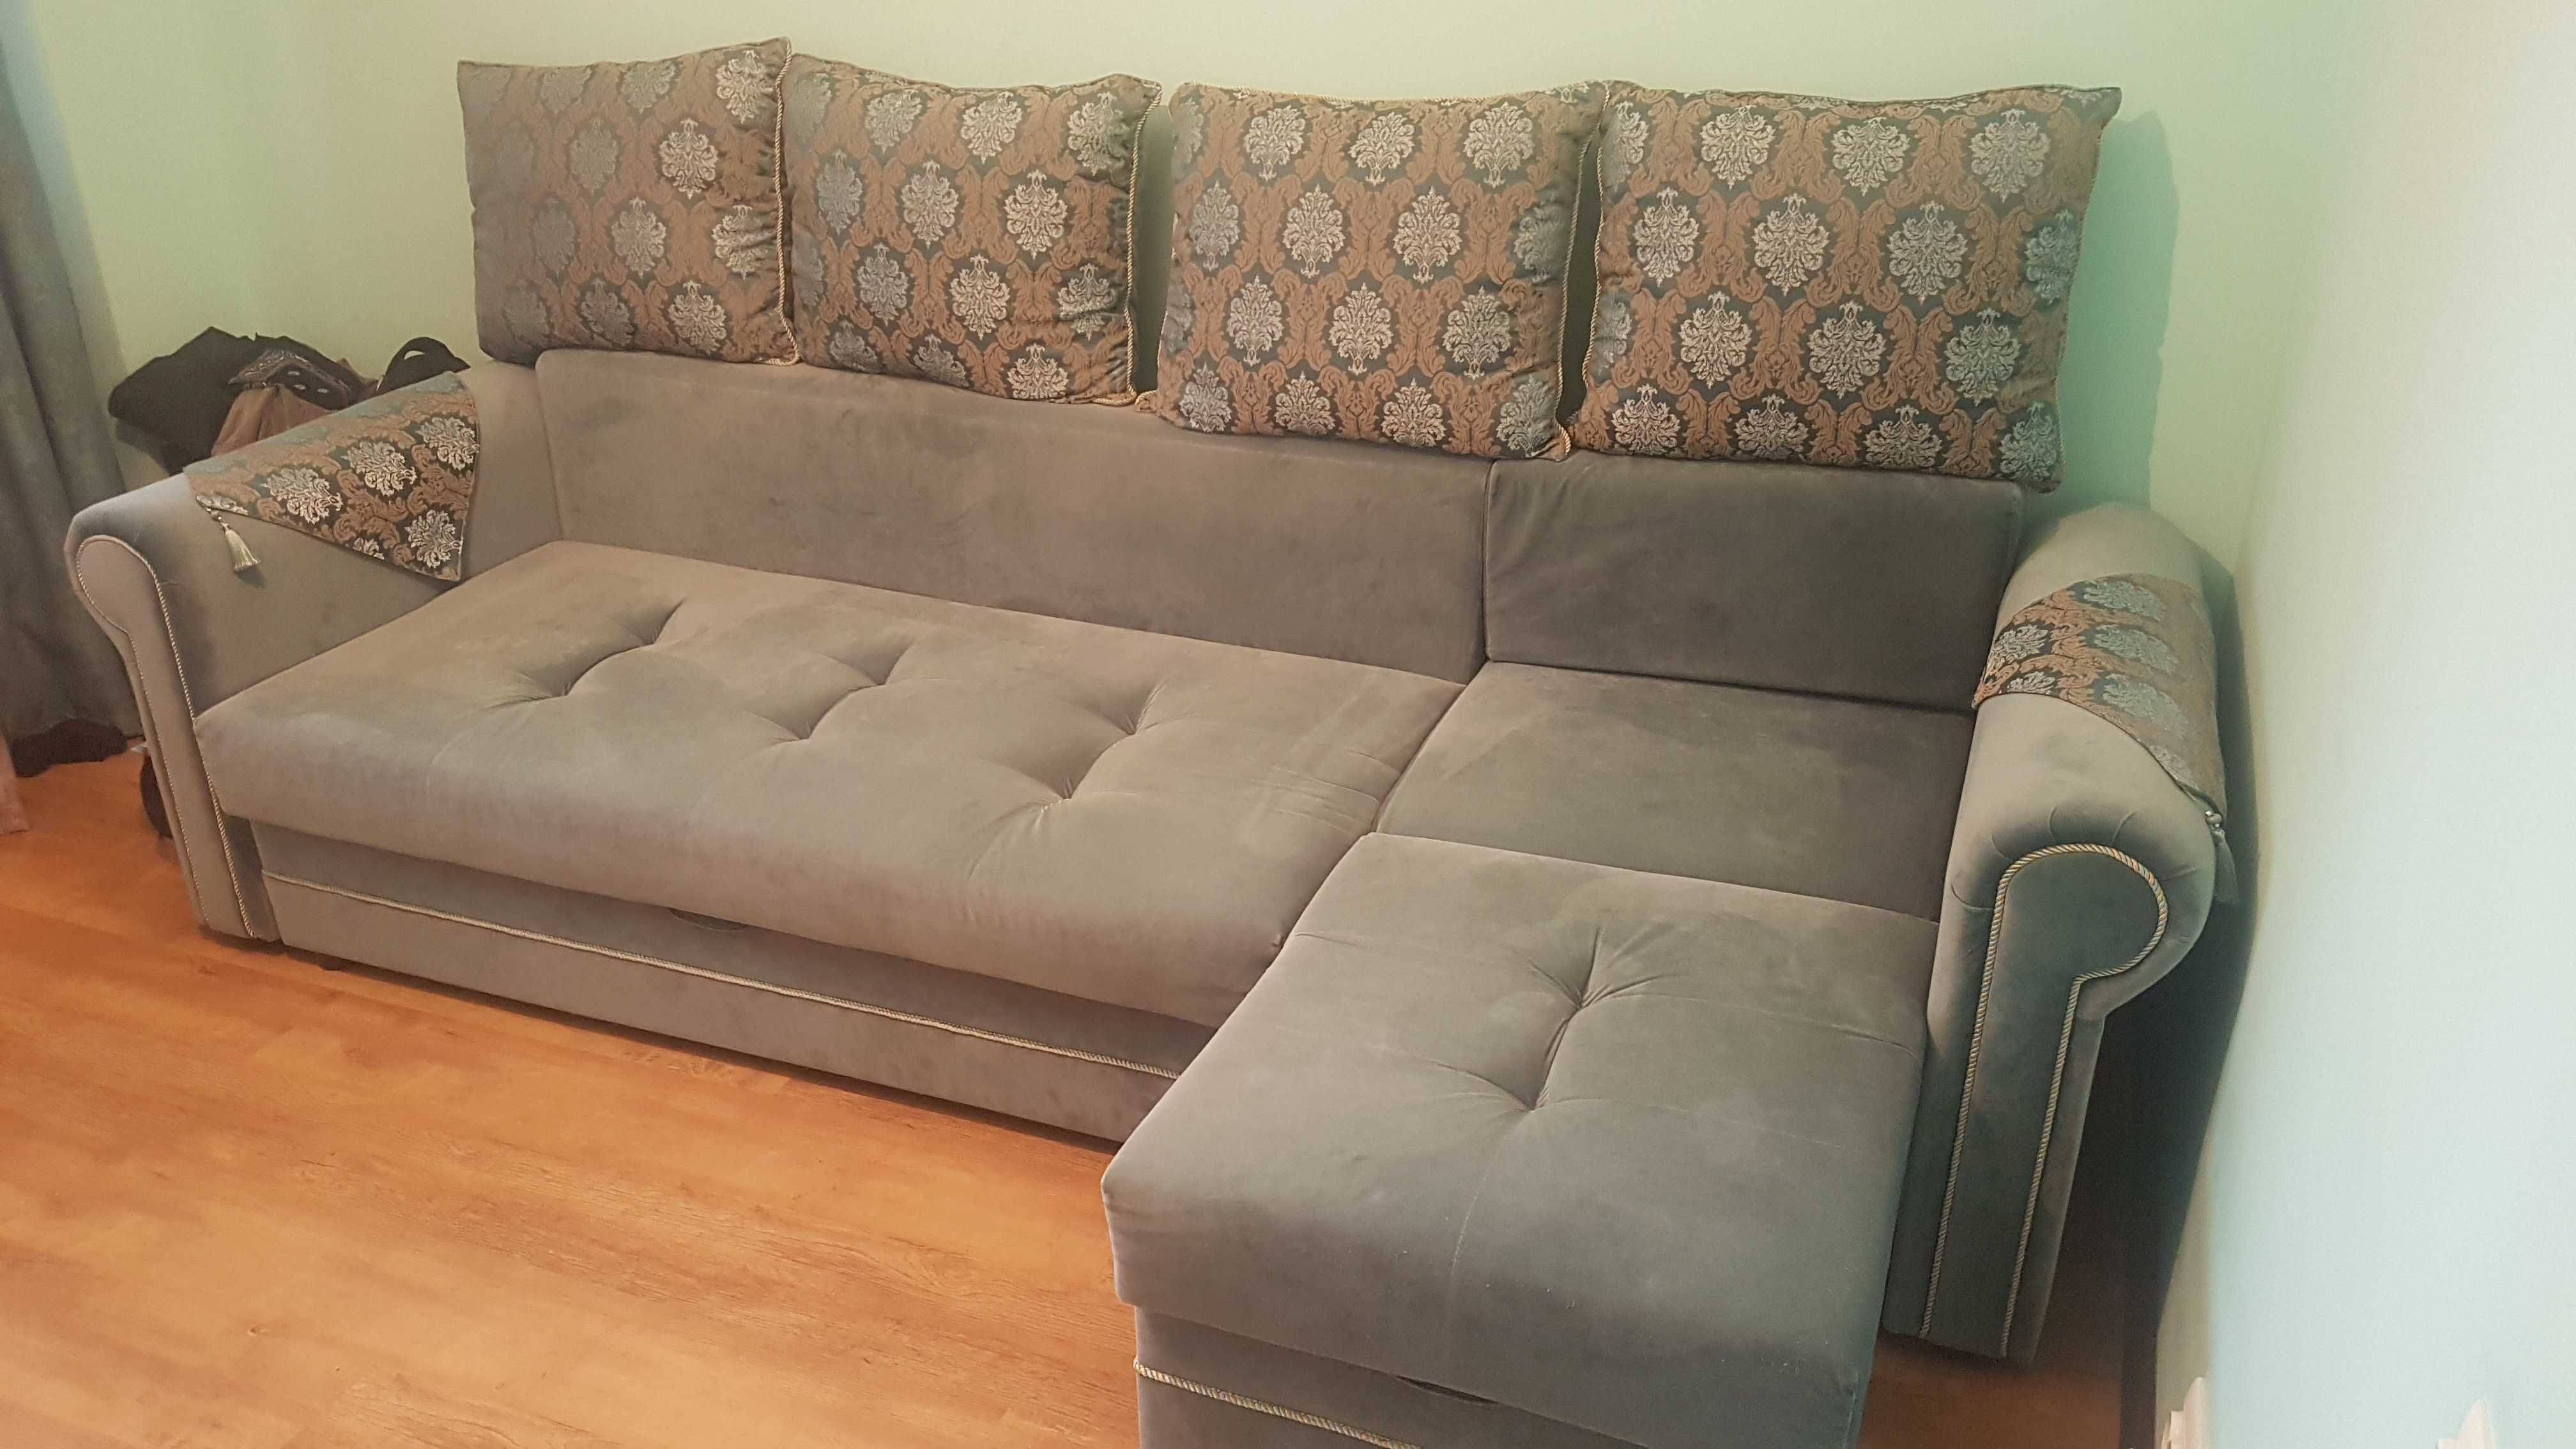 Угловой диван, новый